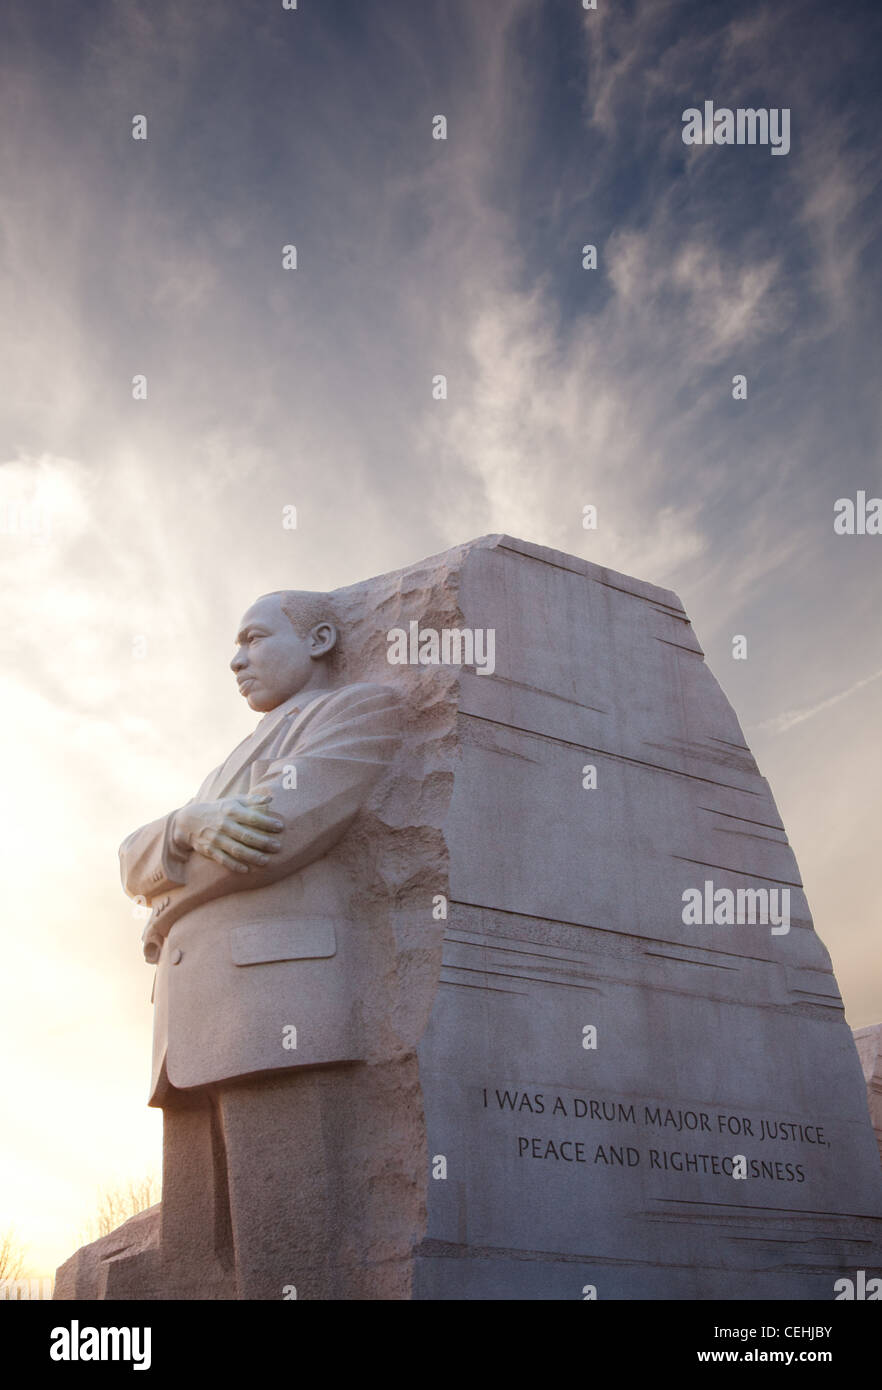 Washington, DC - 13 février : Monument de Dr Martin Luther King le 13 février 2012. Les gouvernements ont accepté le Fév 12 pour changer le tambour-major mots sur la statue Banque D'Images